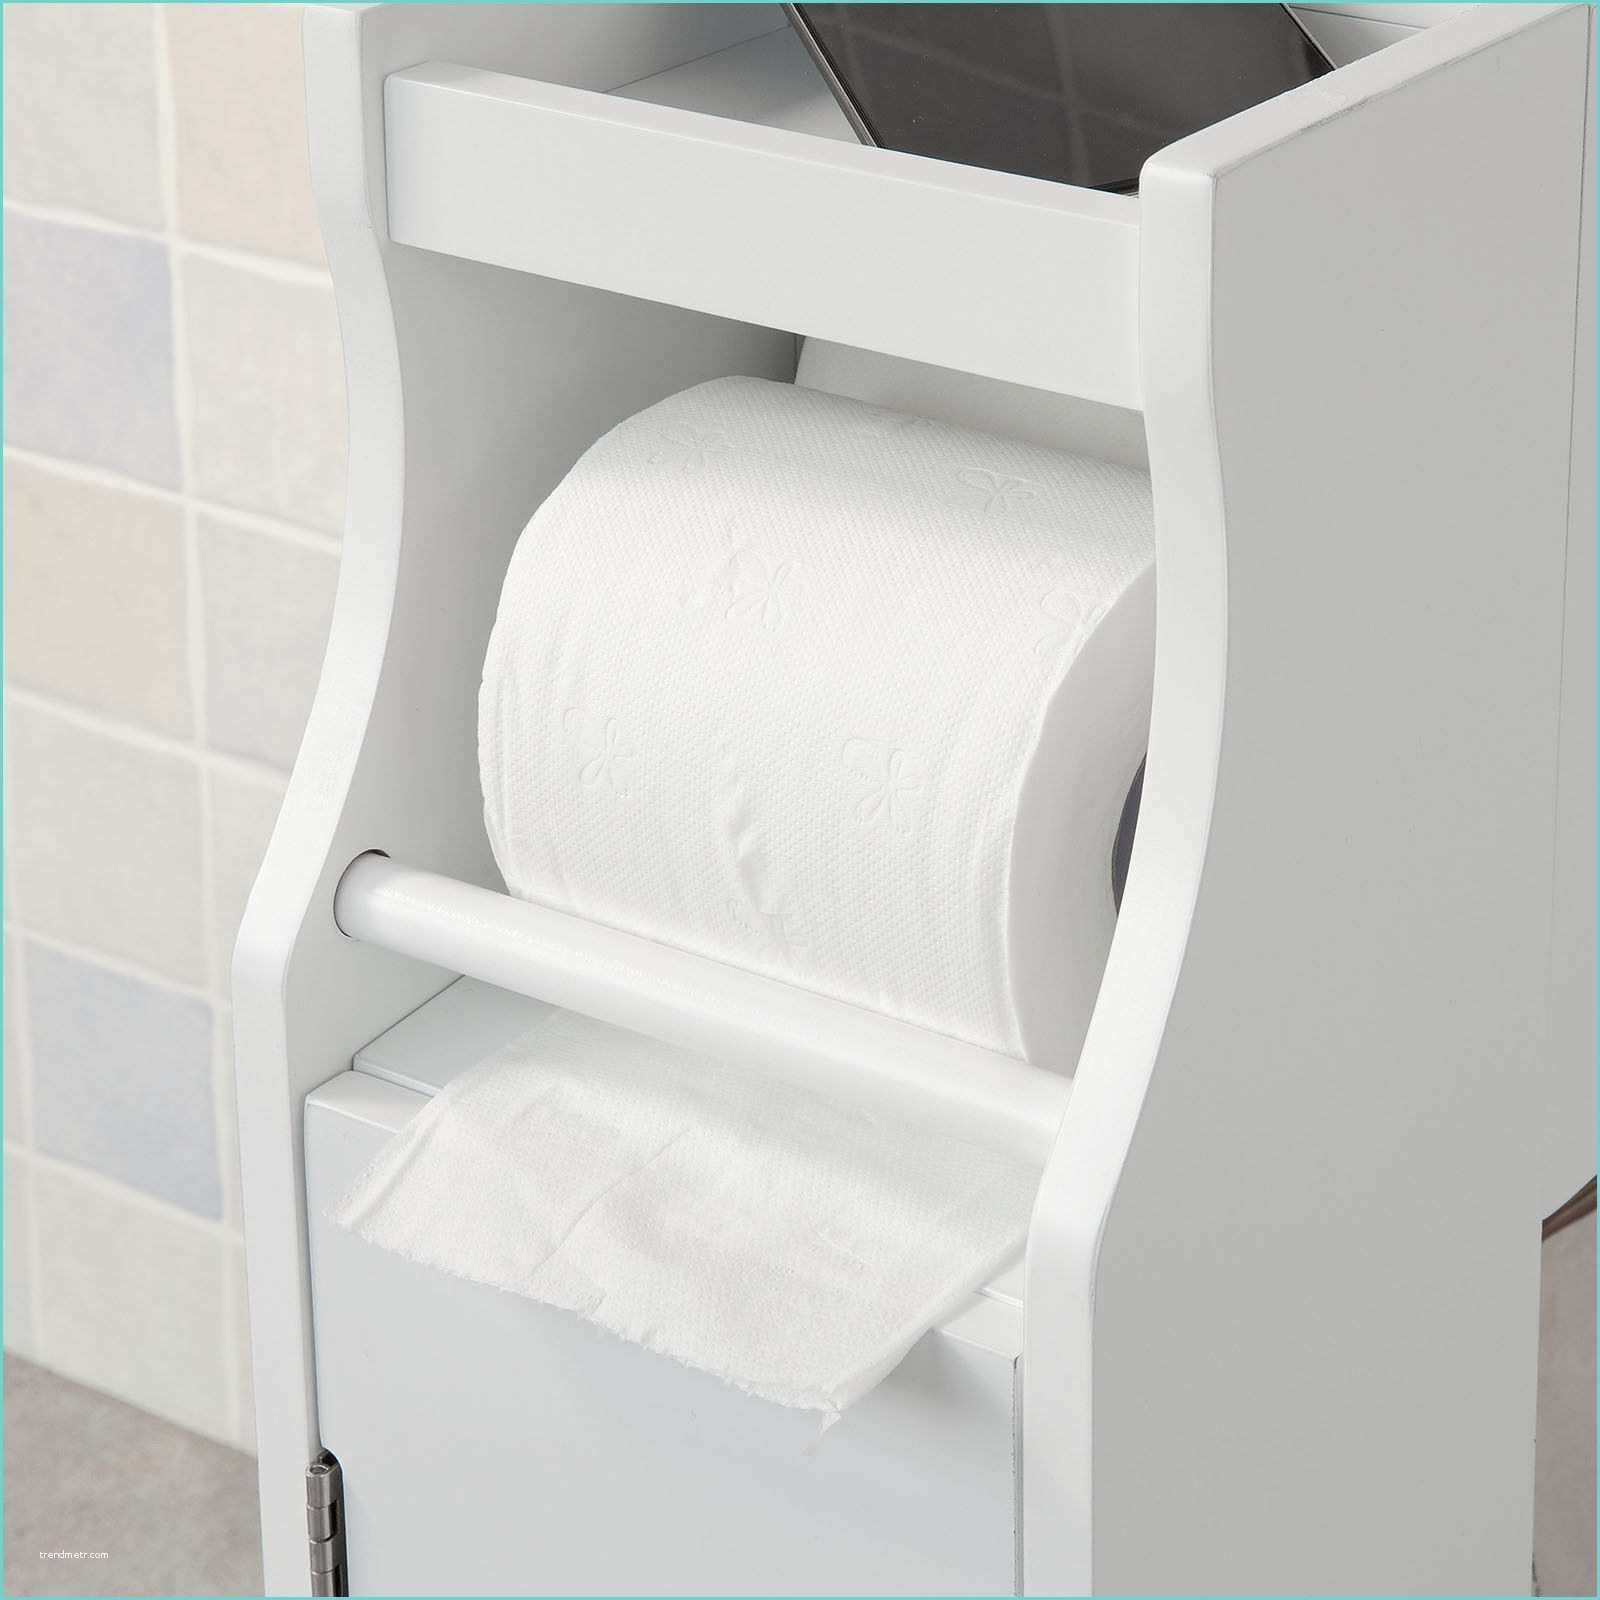 Meuble De Rangement Wc Armoire Papier toilette – Obasinc